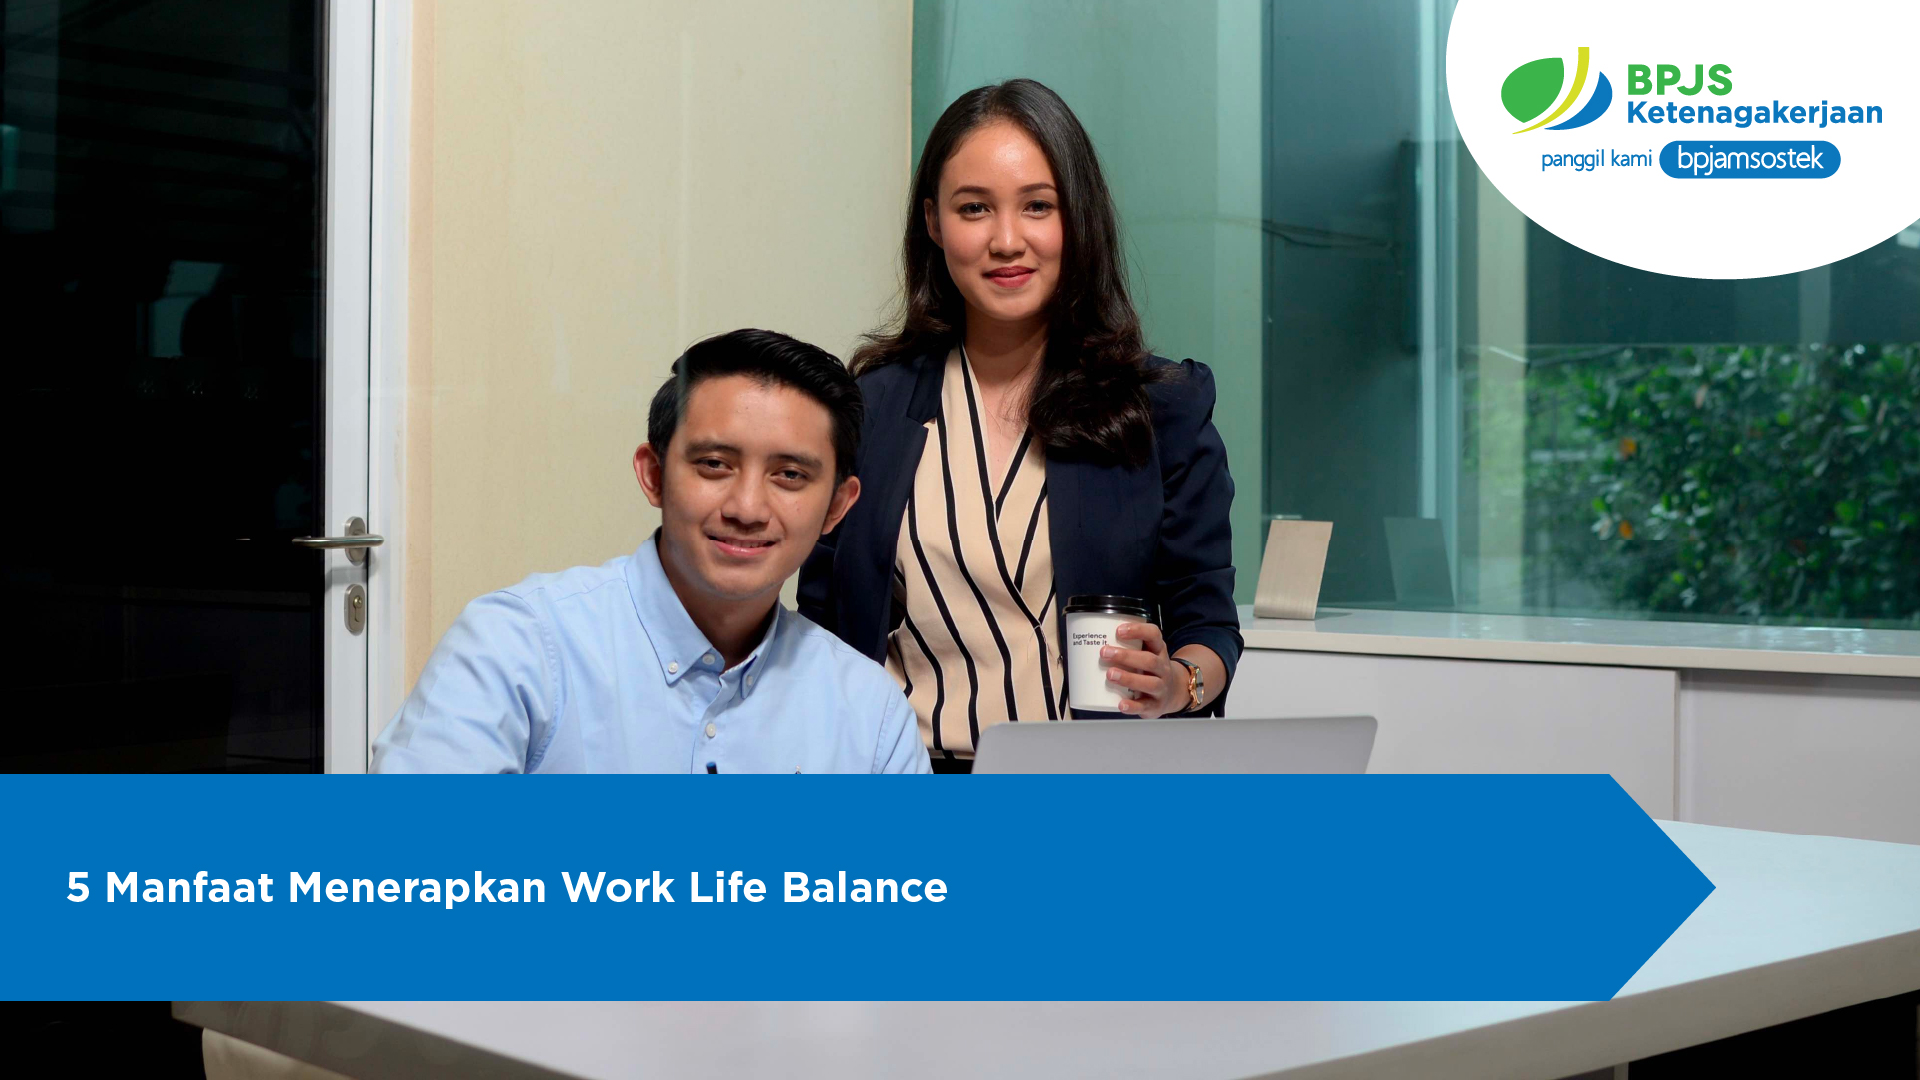 5 Manfaat Menerapkan Work Life Balance